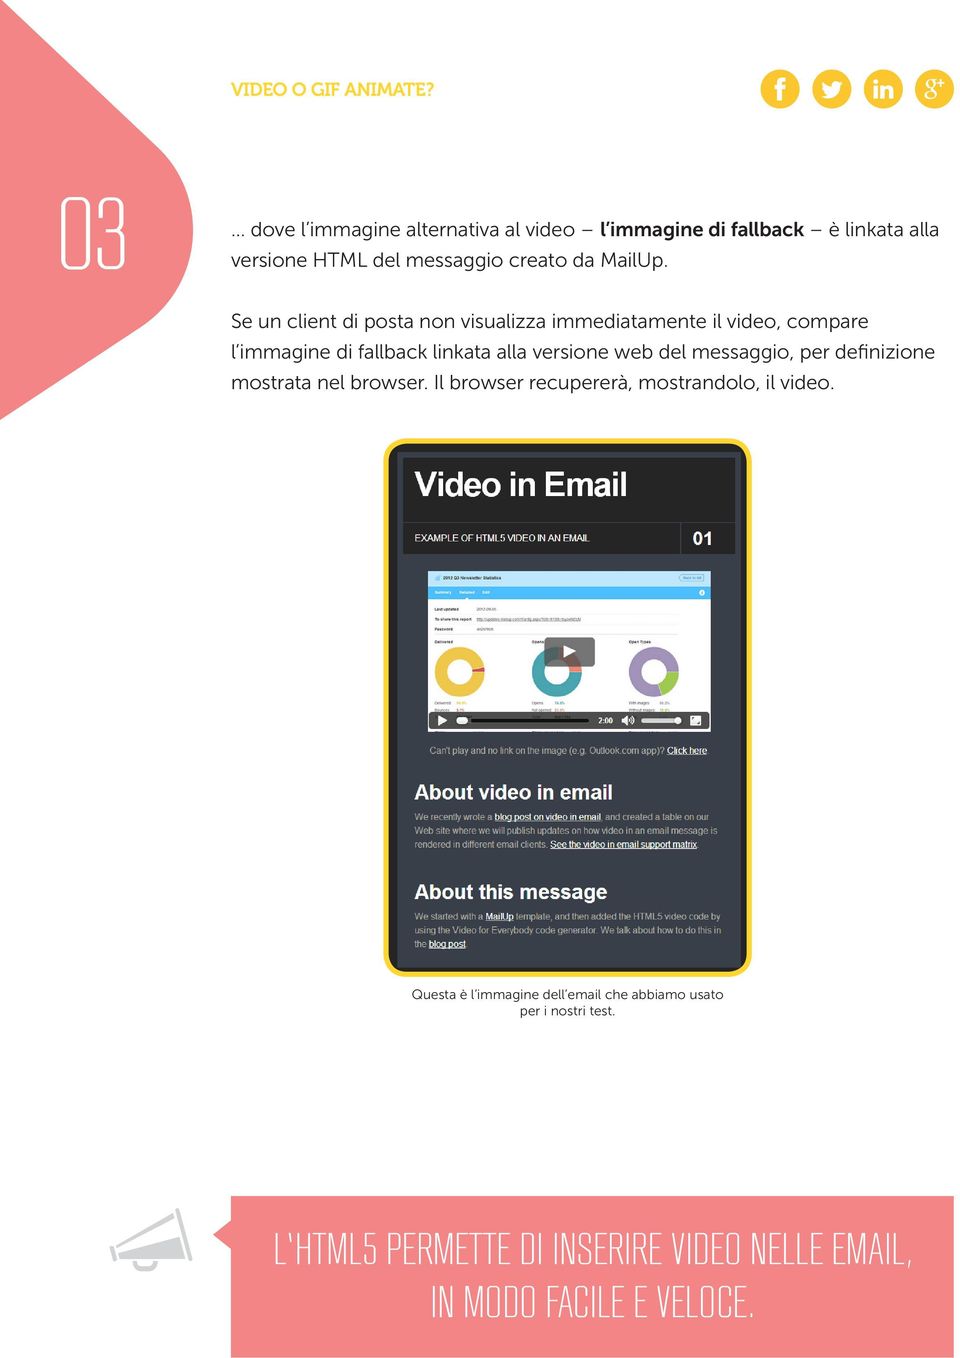 Se un client di posta non visualizza immediatamente il video, compare l immagine di fallback linkata alla versione web